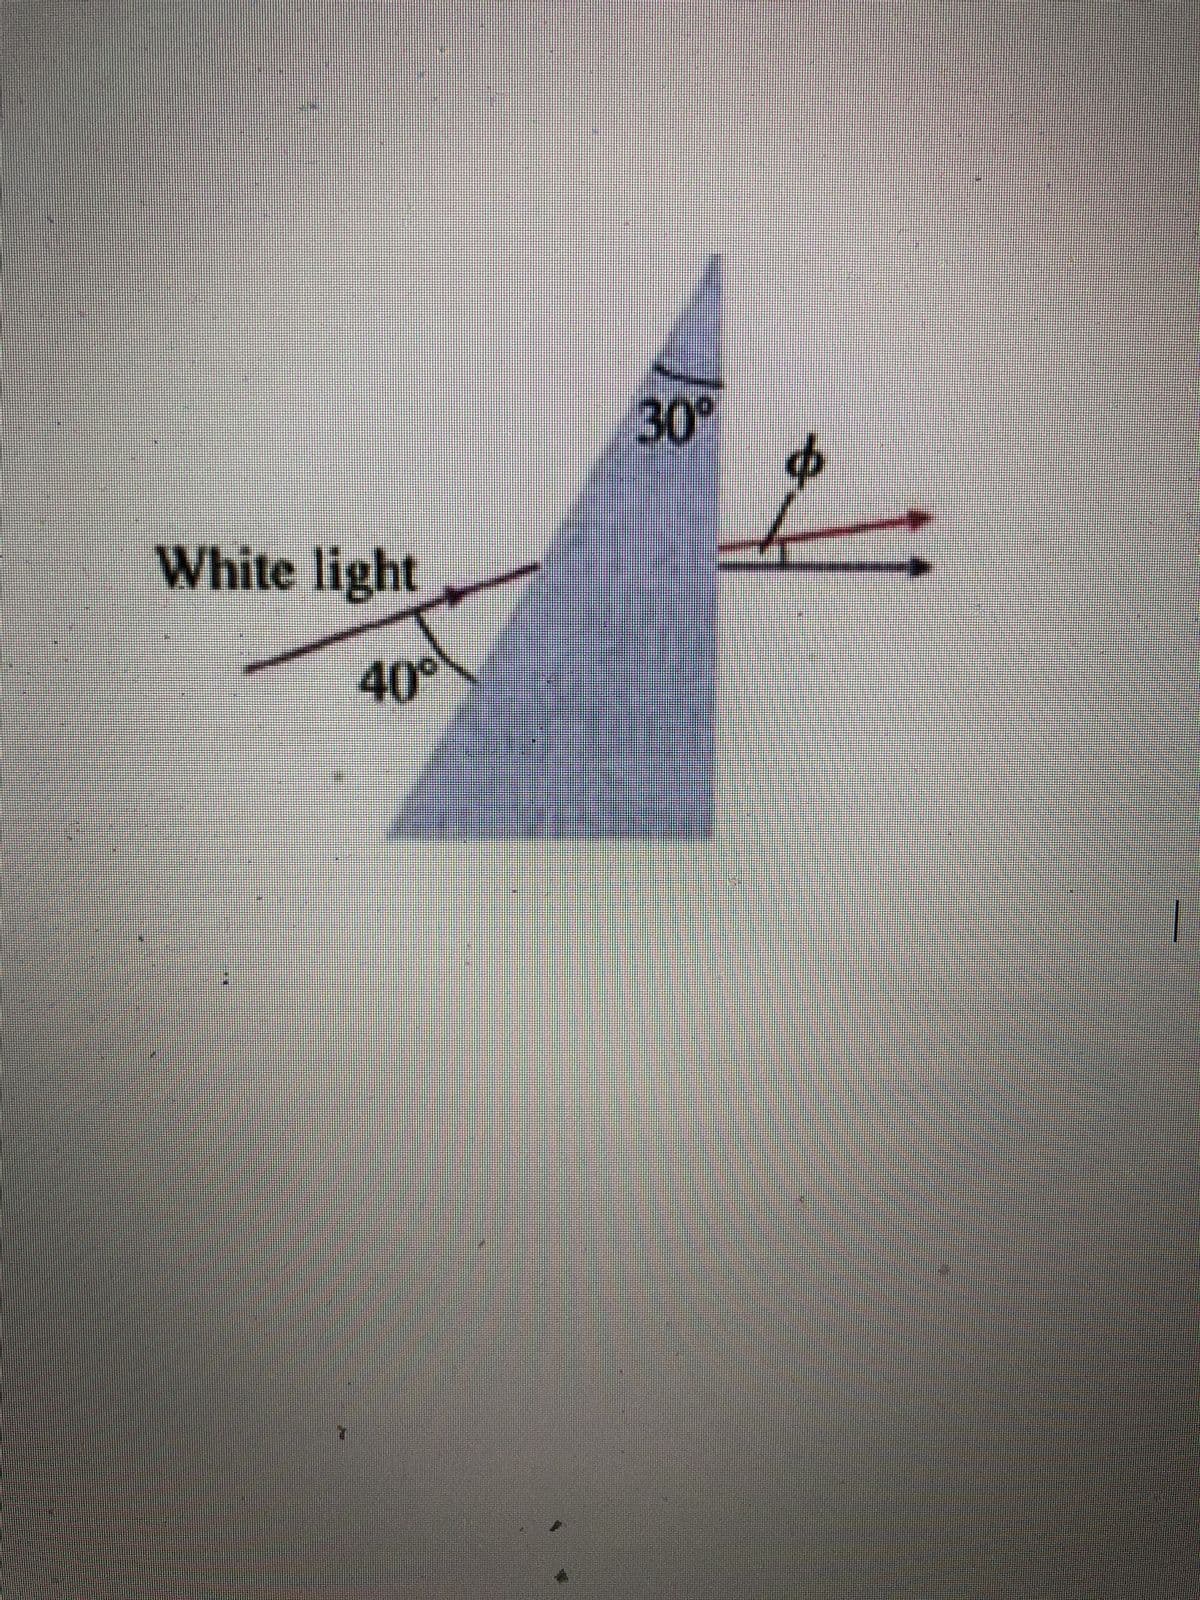 White light
40%
30°
+